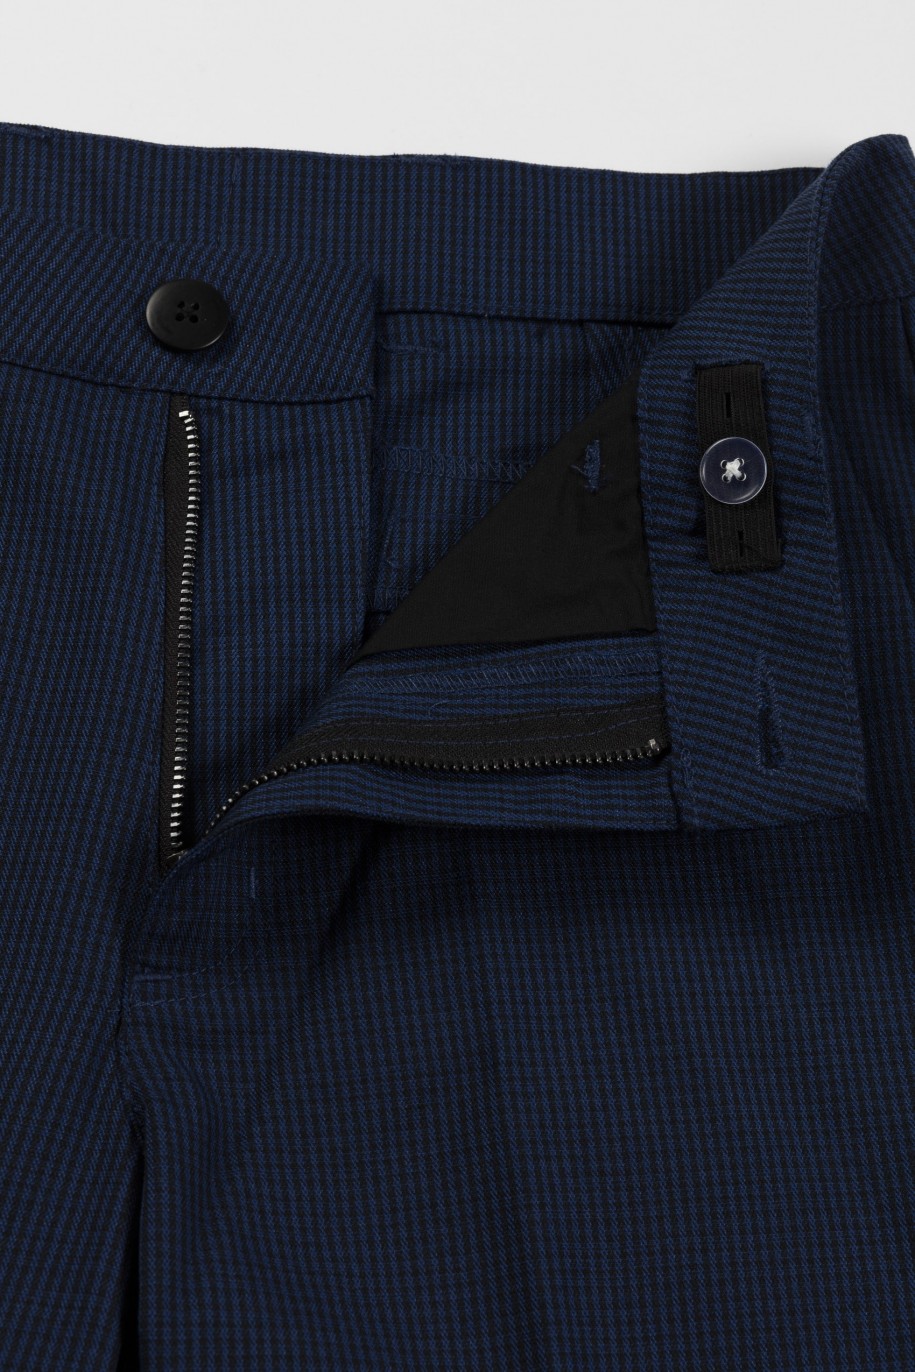 Spodnie garniturowe w drobną grantowo-czarną kratkę - 46364